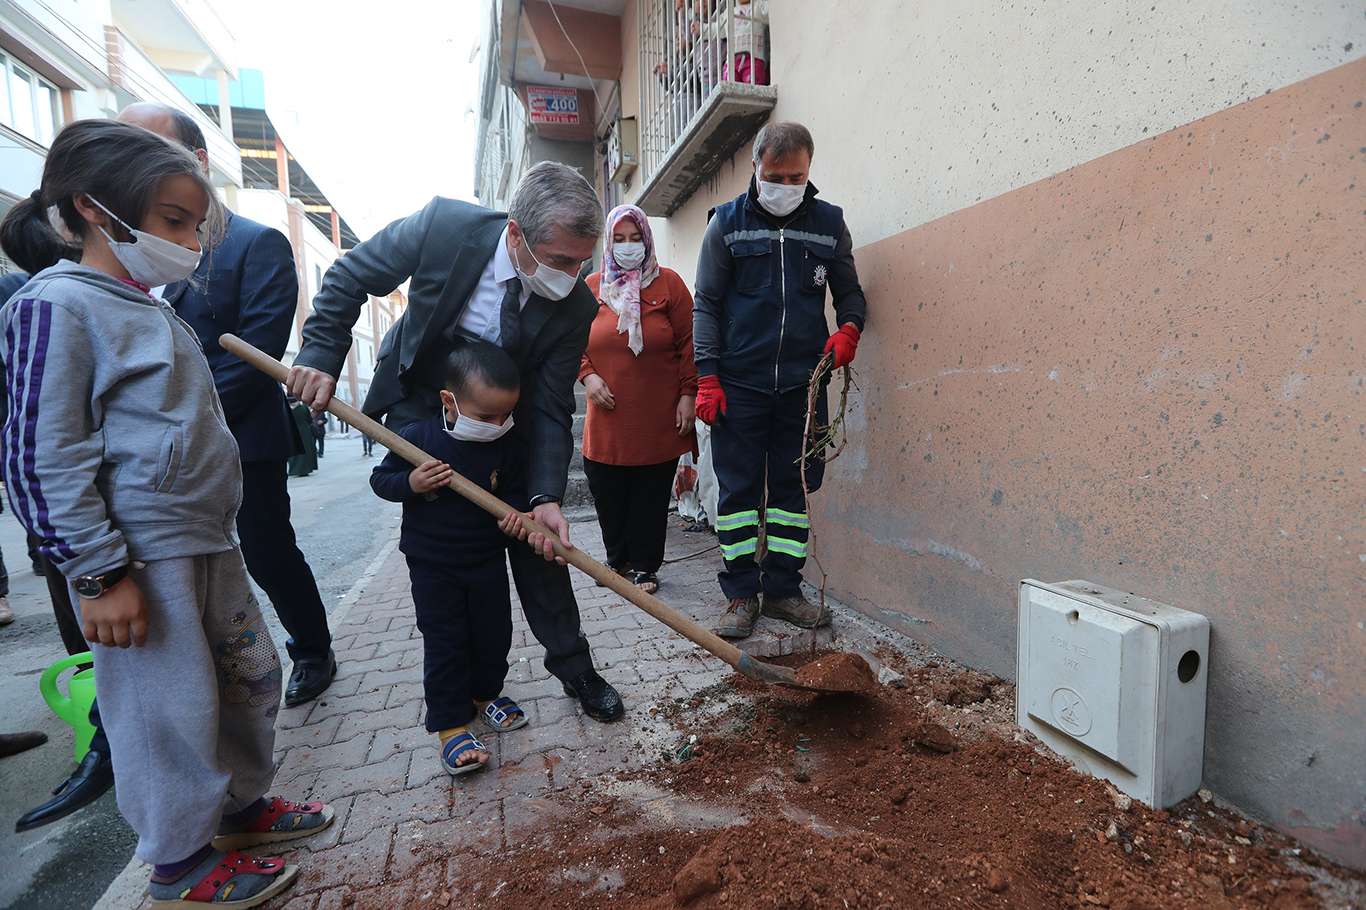 Gaziantep’te vatandaşlara ücretsiz fidan dağıtıldı